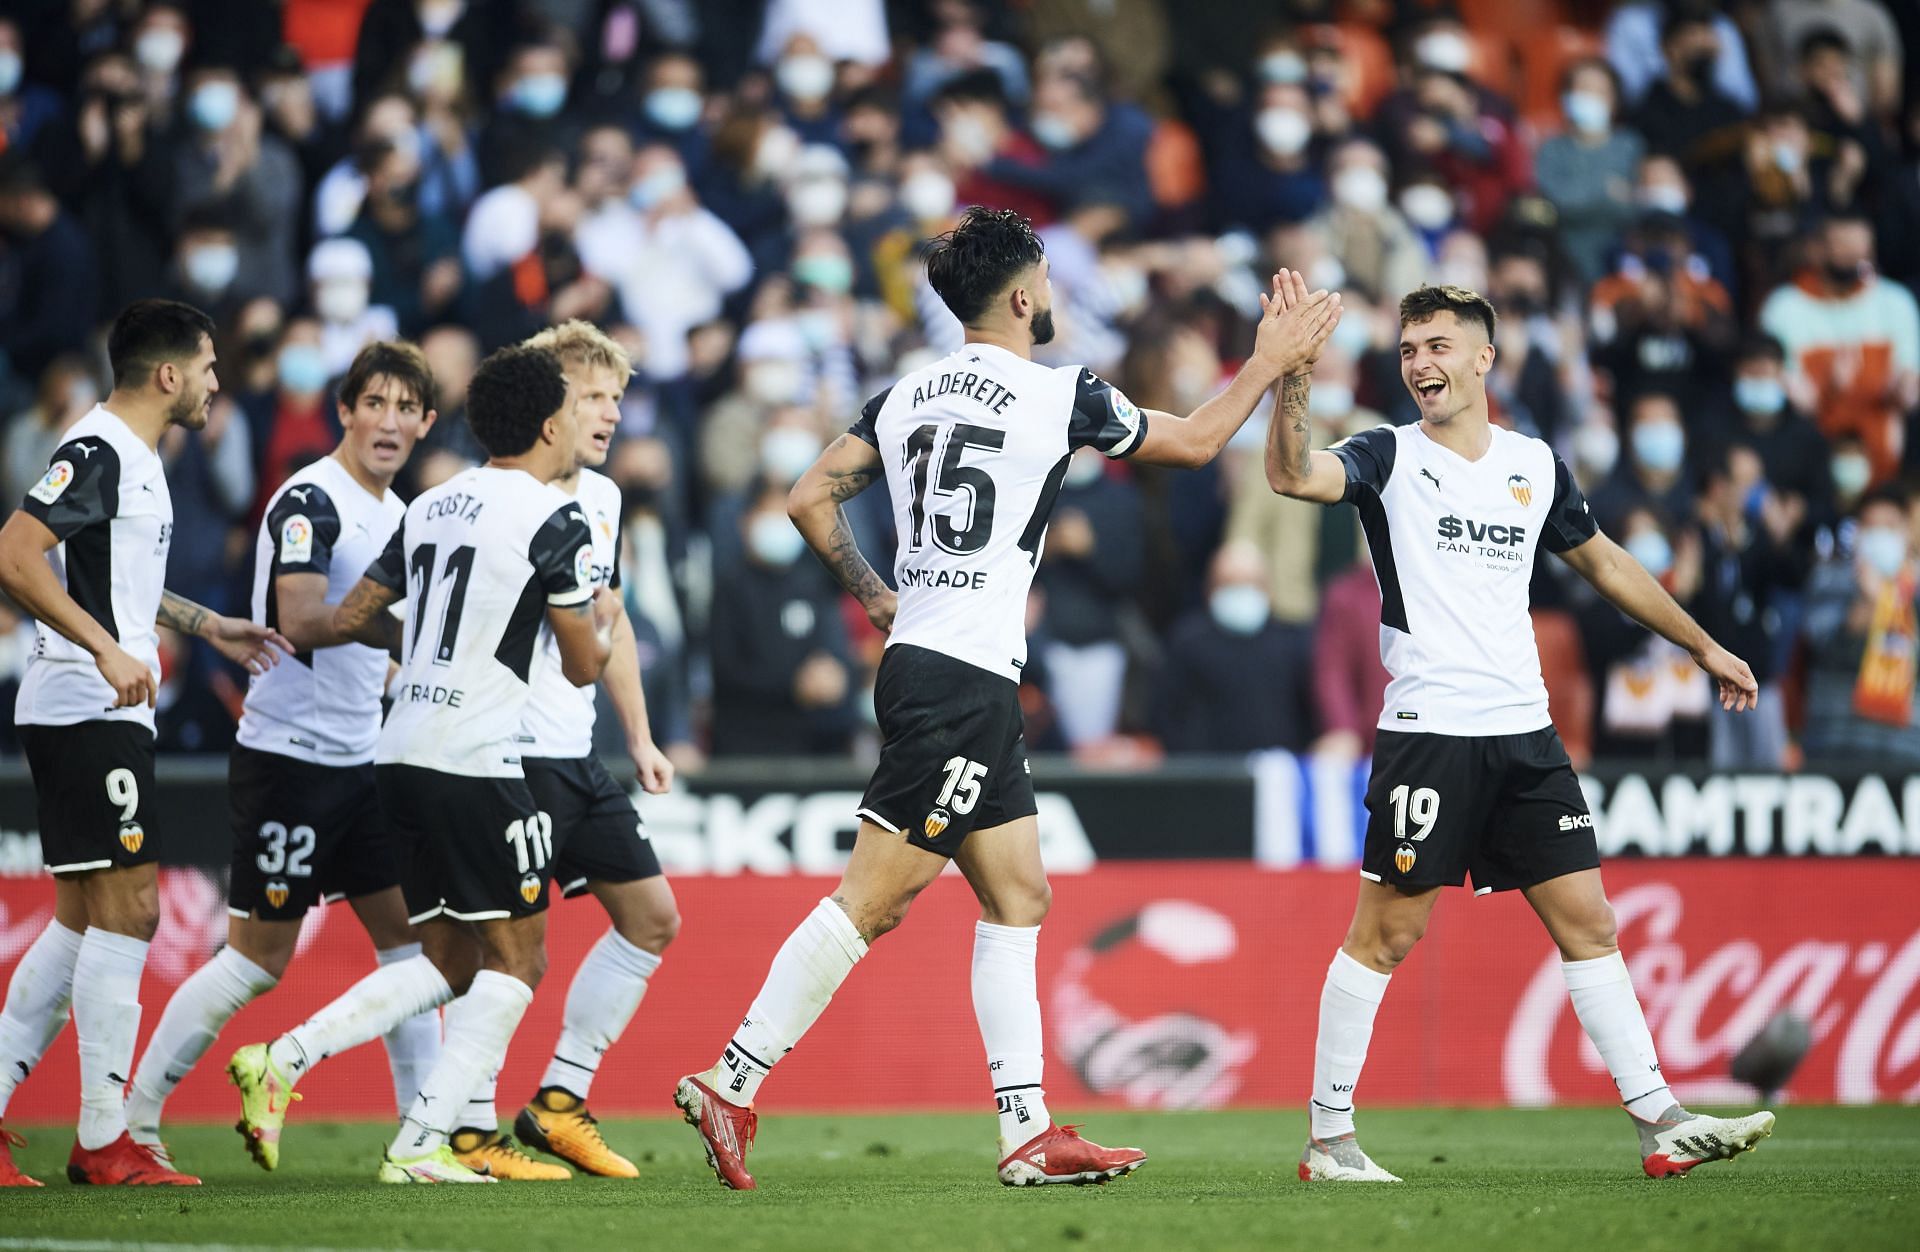 Valencia CF will face Cartagena on Wednesday - Copa del Rey